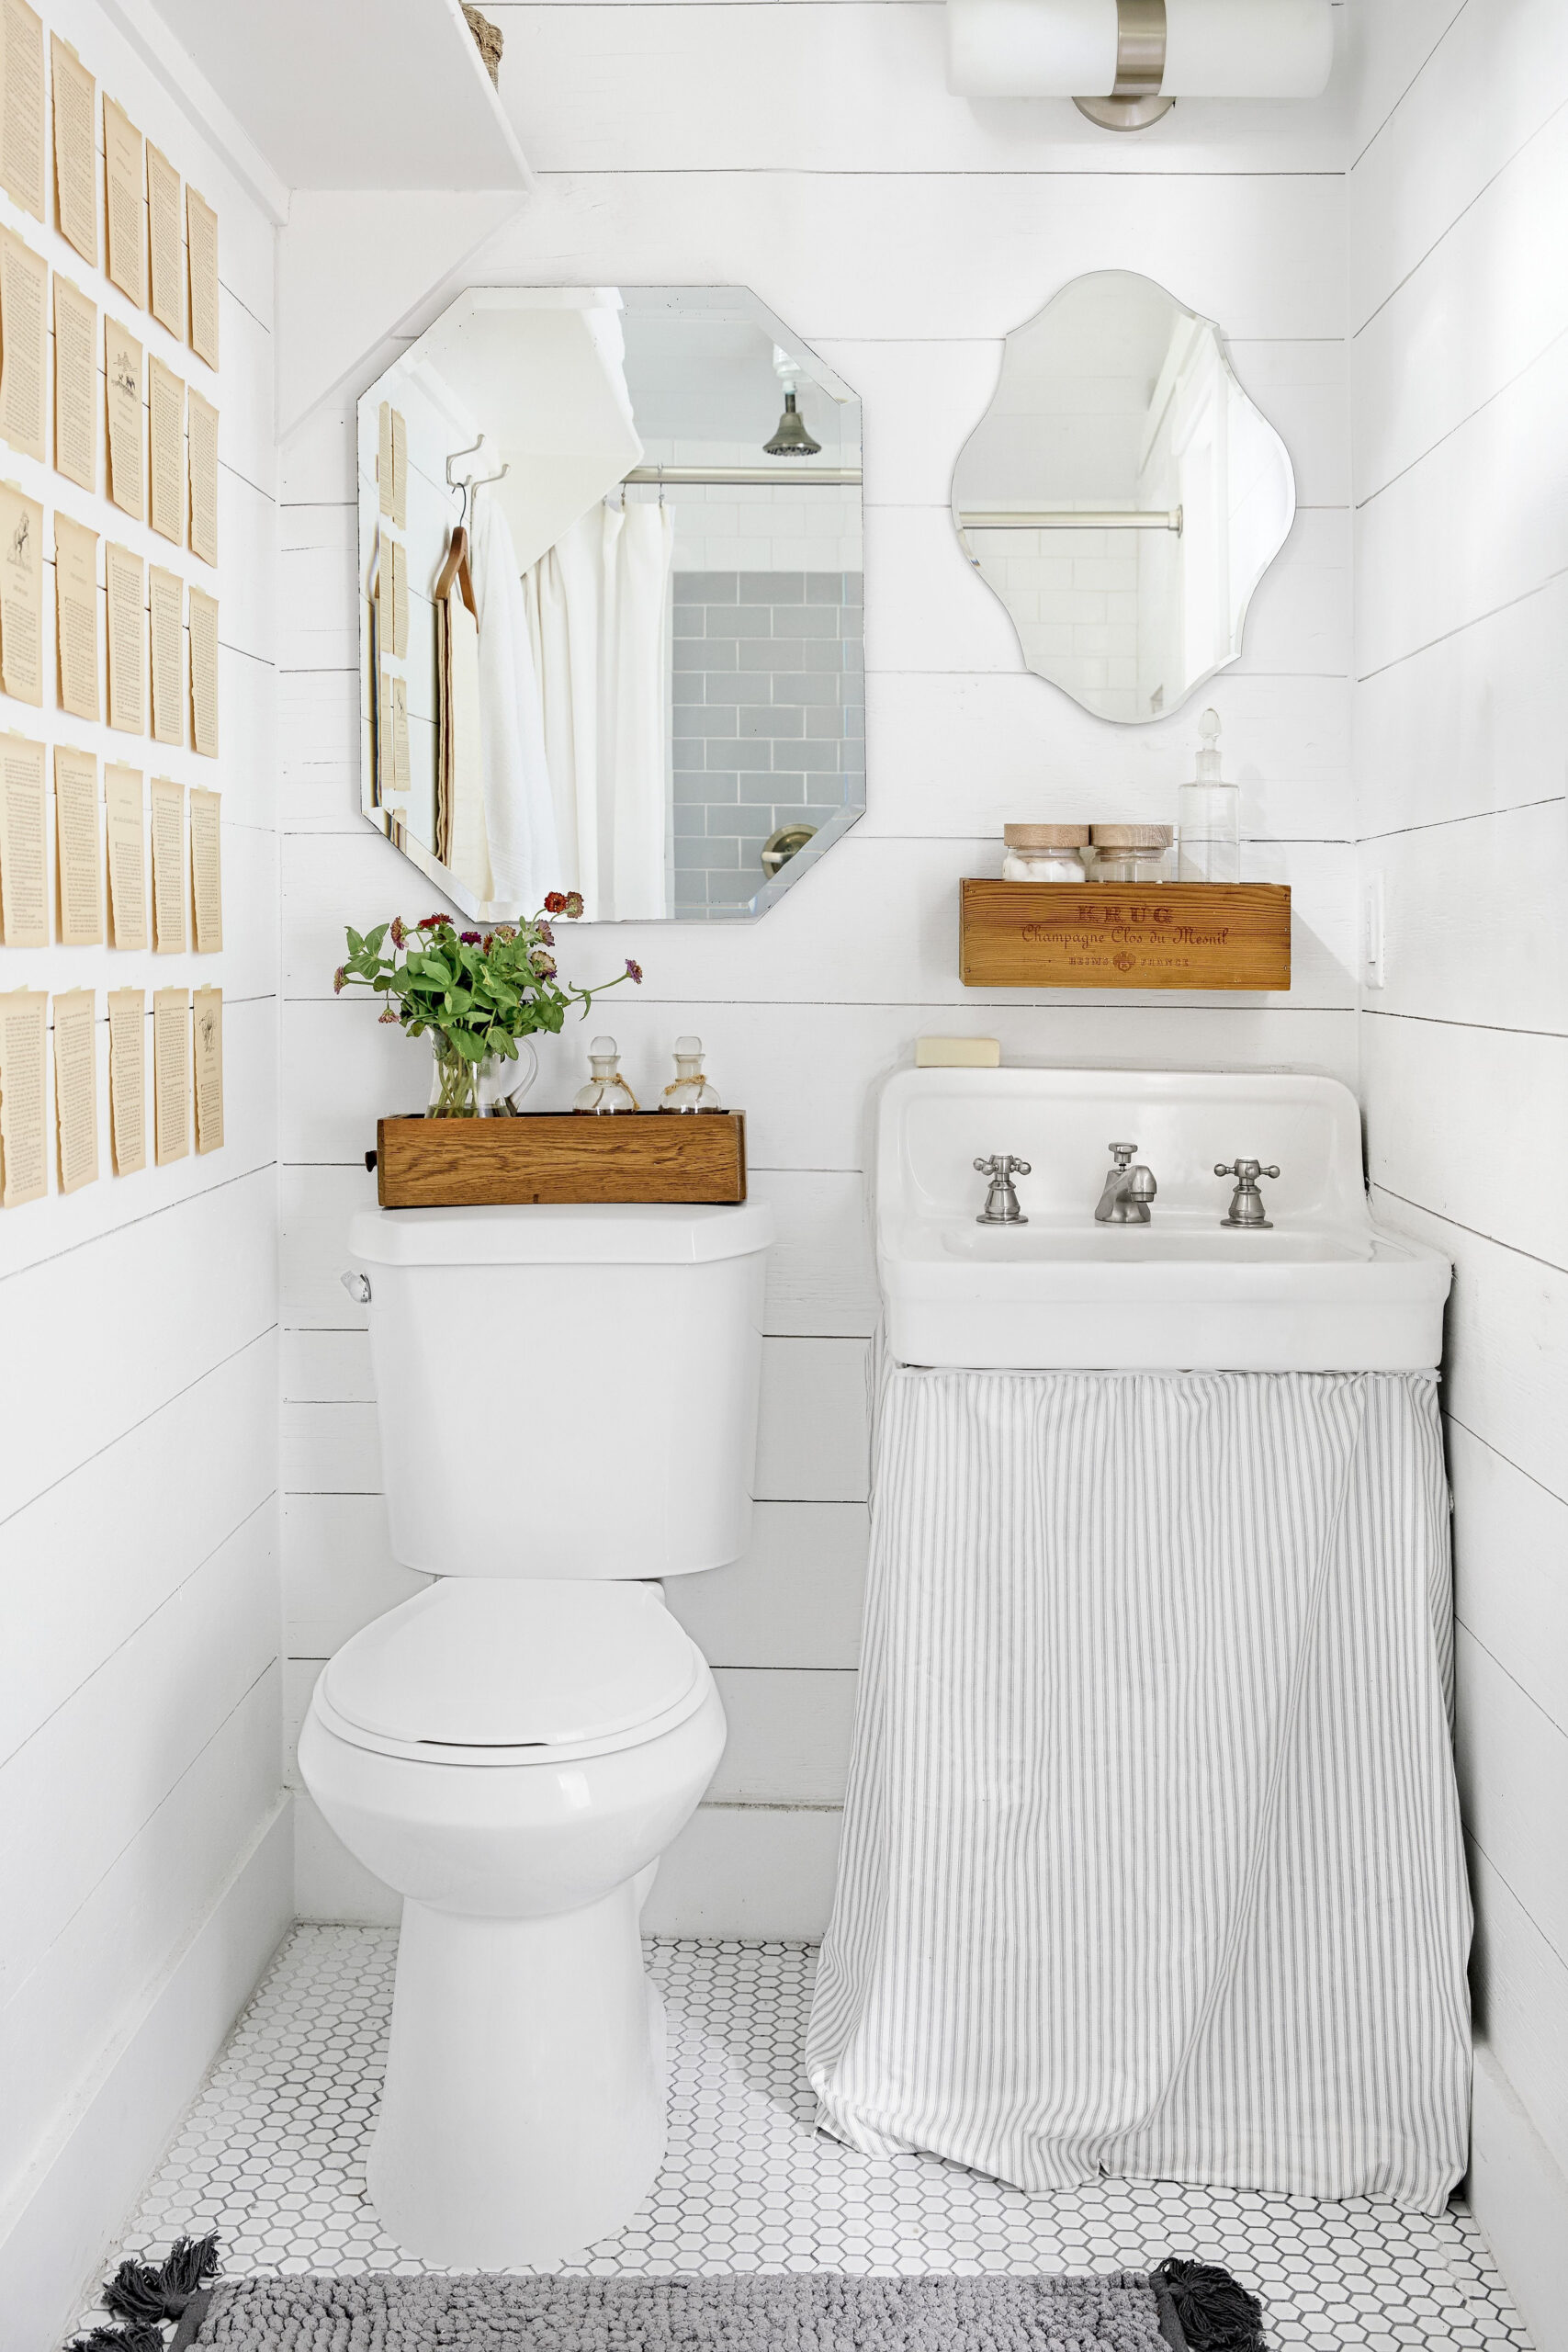 Half Bathroom Ideas - Decor Ideas for Small Spaces